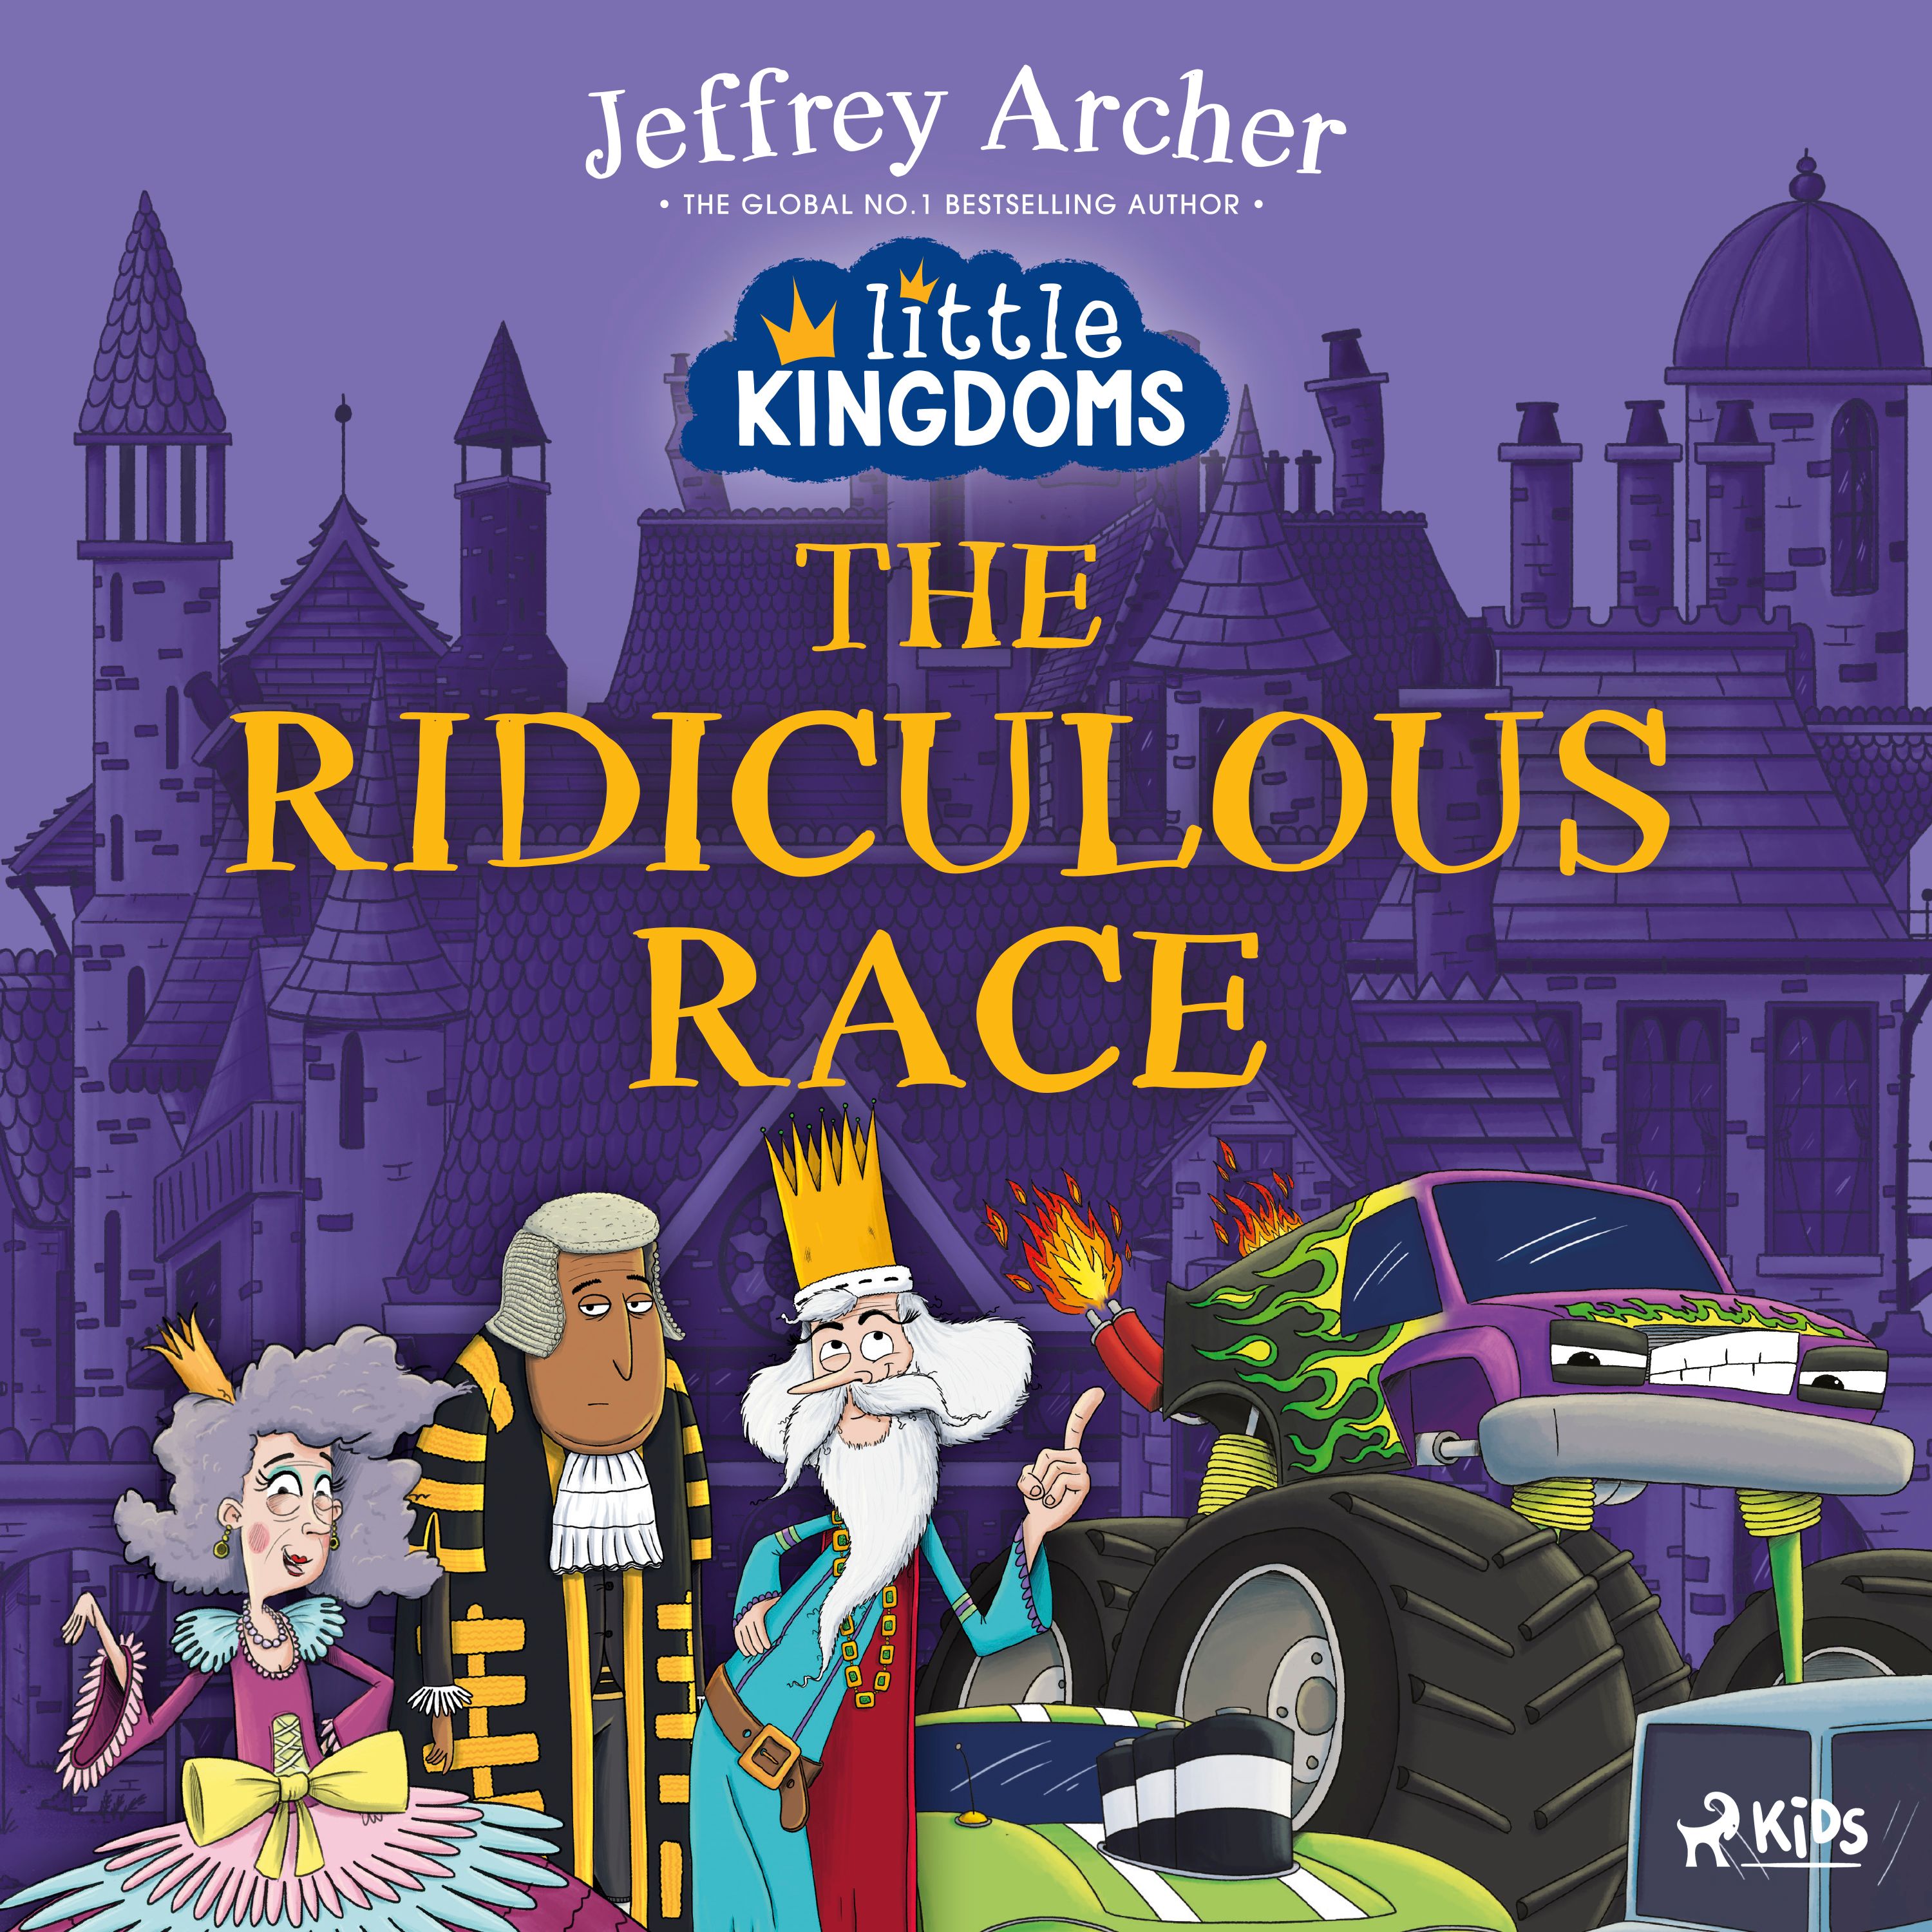 Little Kingdoms: The Ridiculous Race, lydbog af Jeffrey Archer